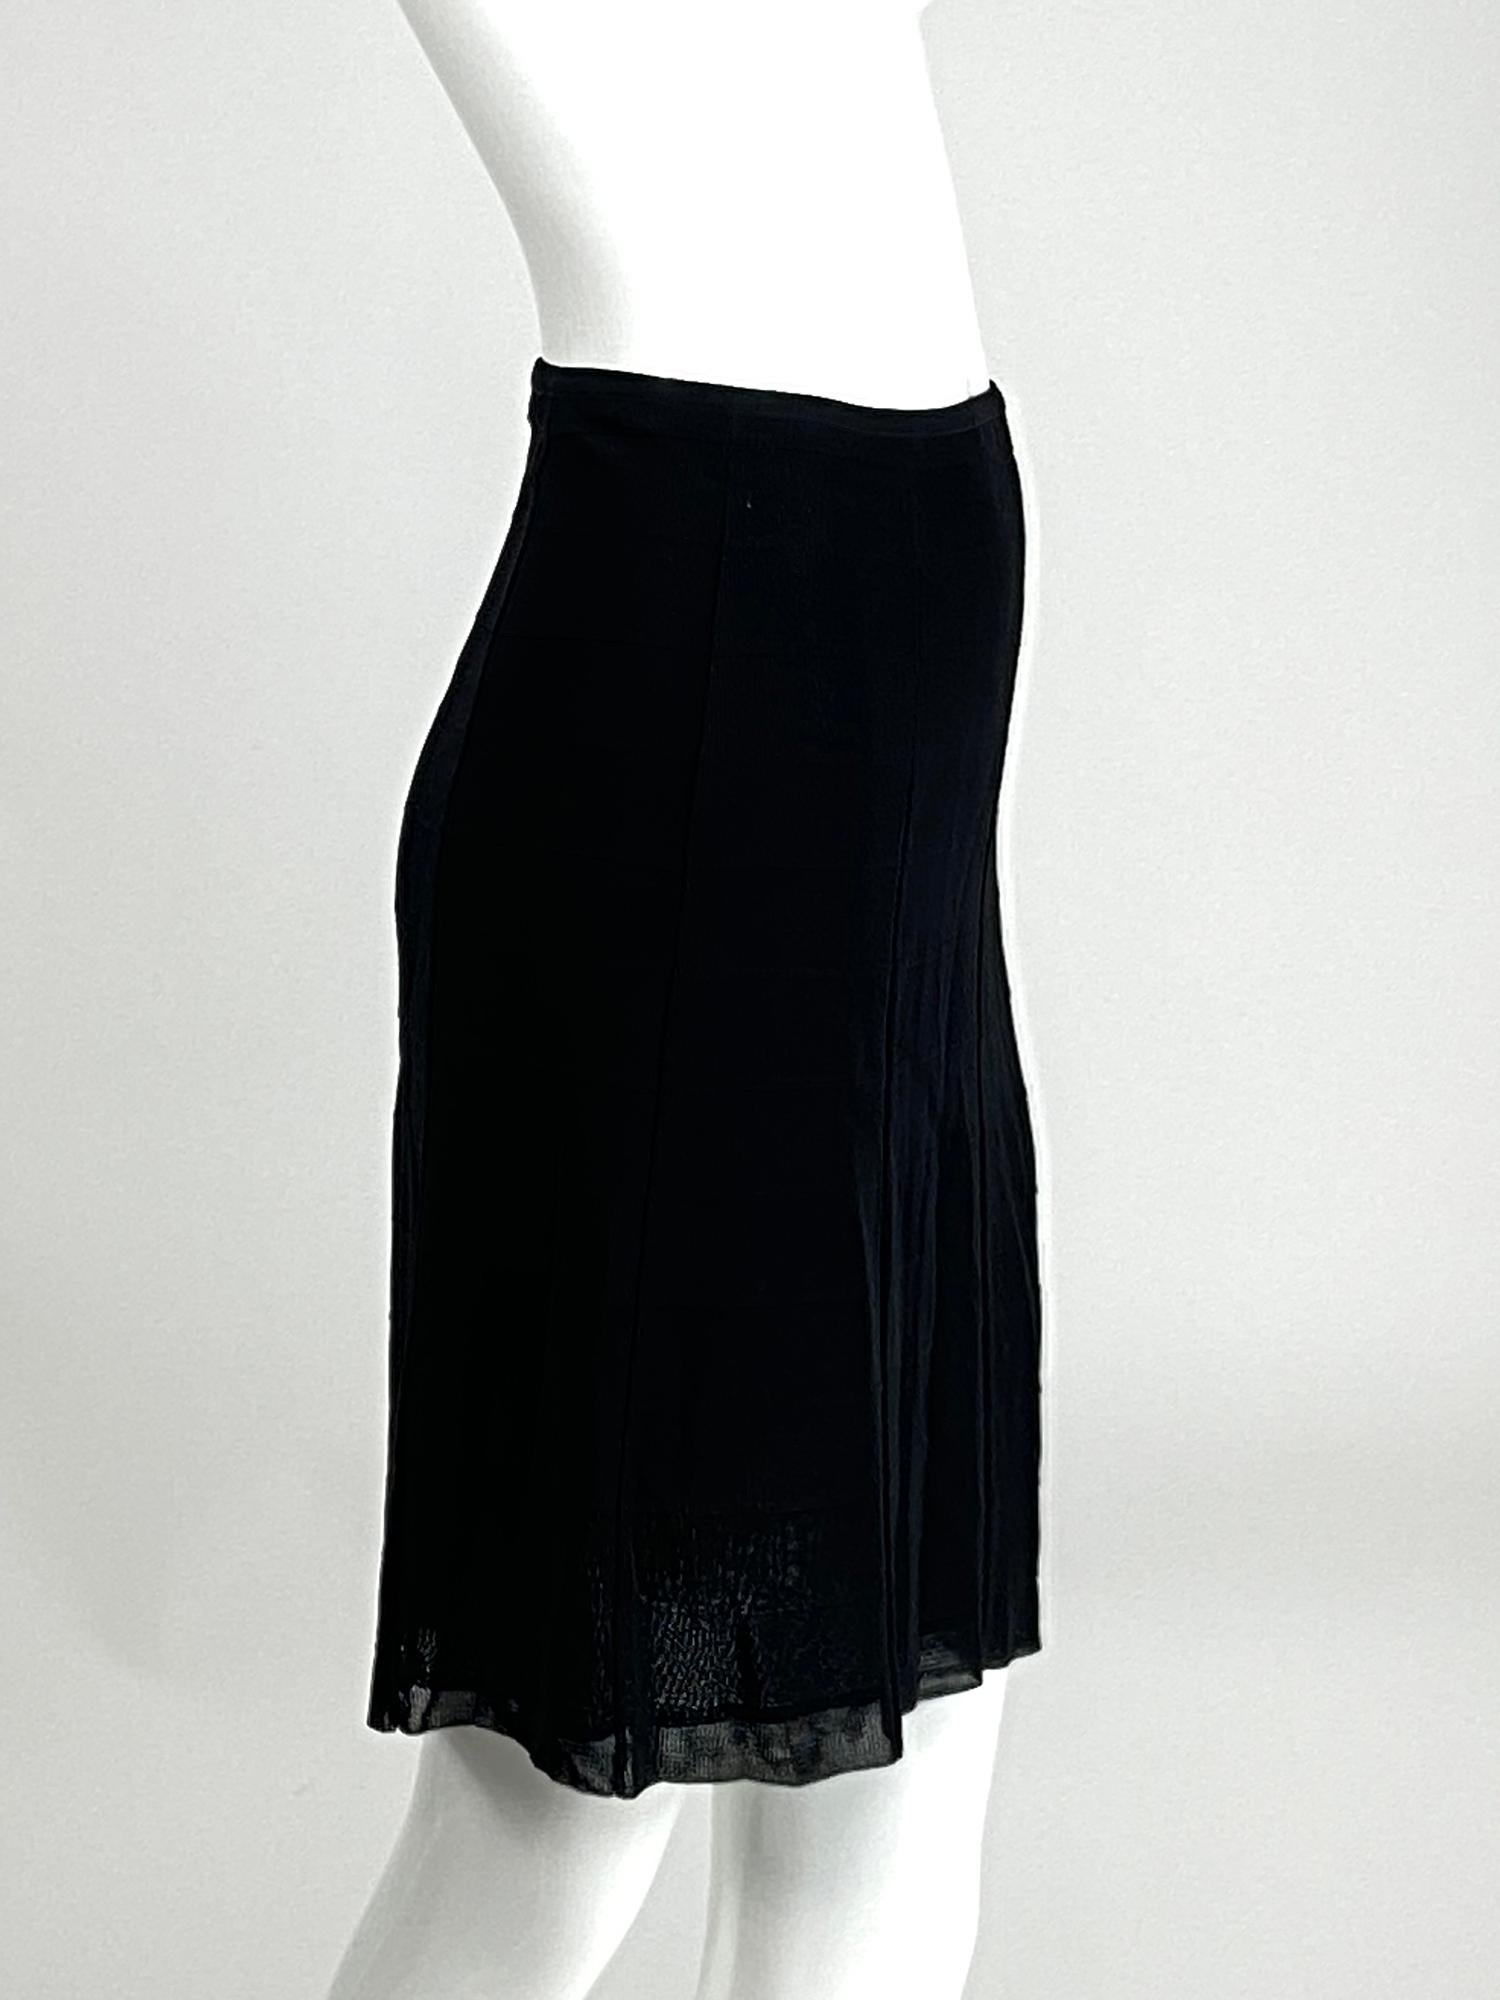 black gored skirt